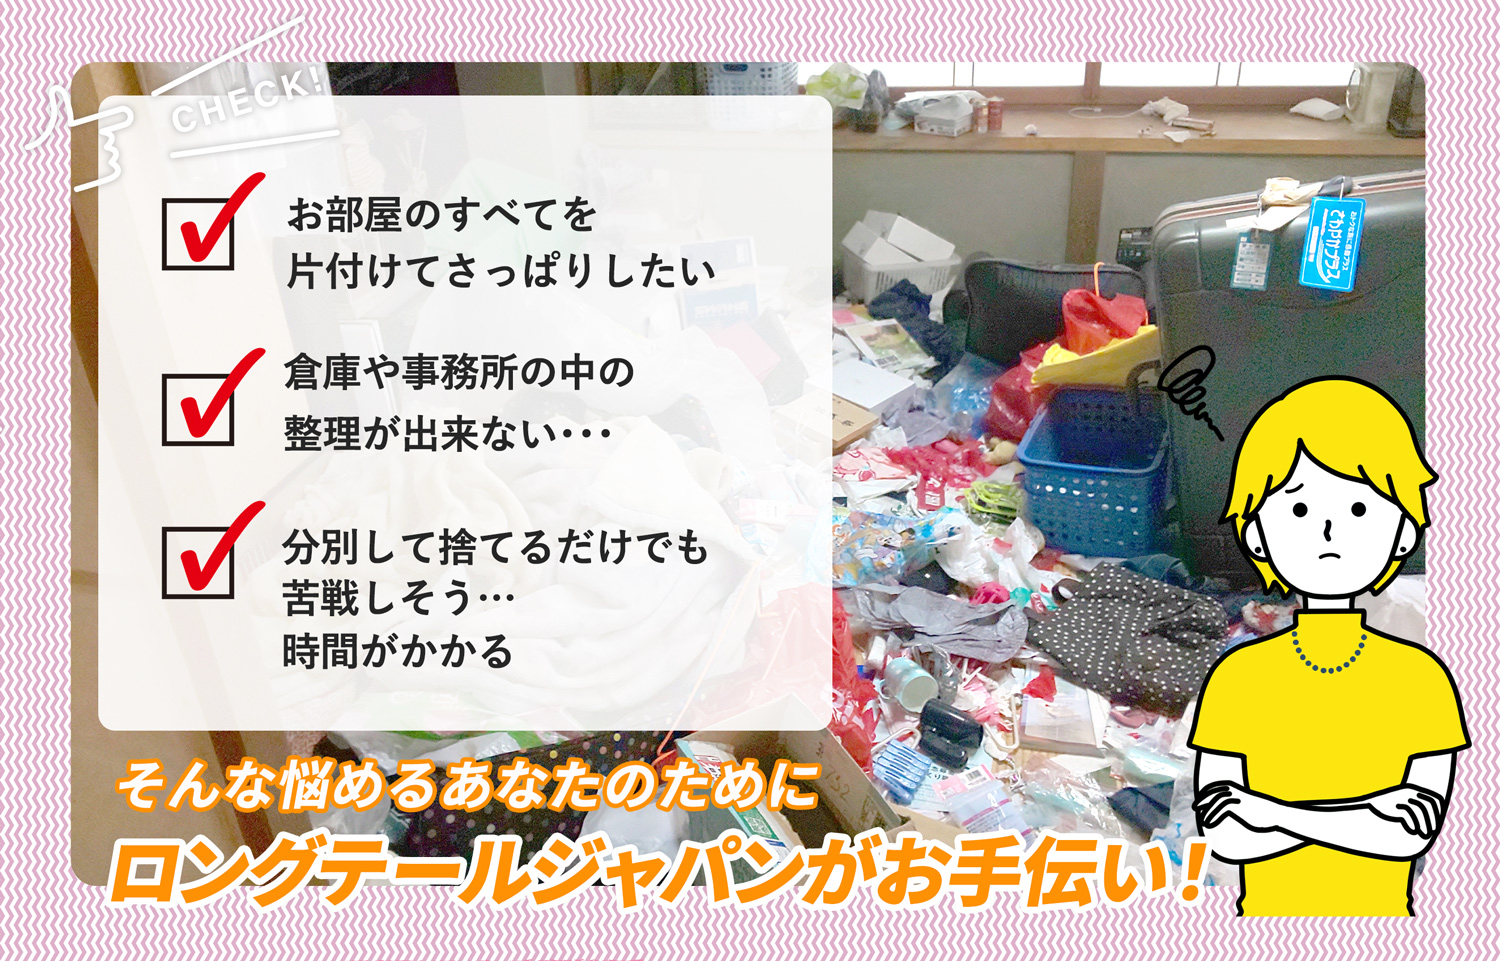 菊川市でお部屋の中から店舗、事務所、倉庫まで自分達で片付けられない場合はお部屋の片付け隊がやらせていただきます。